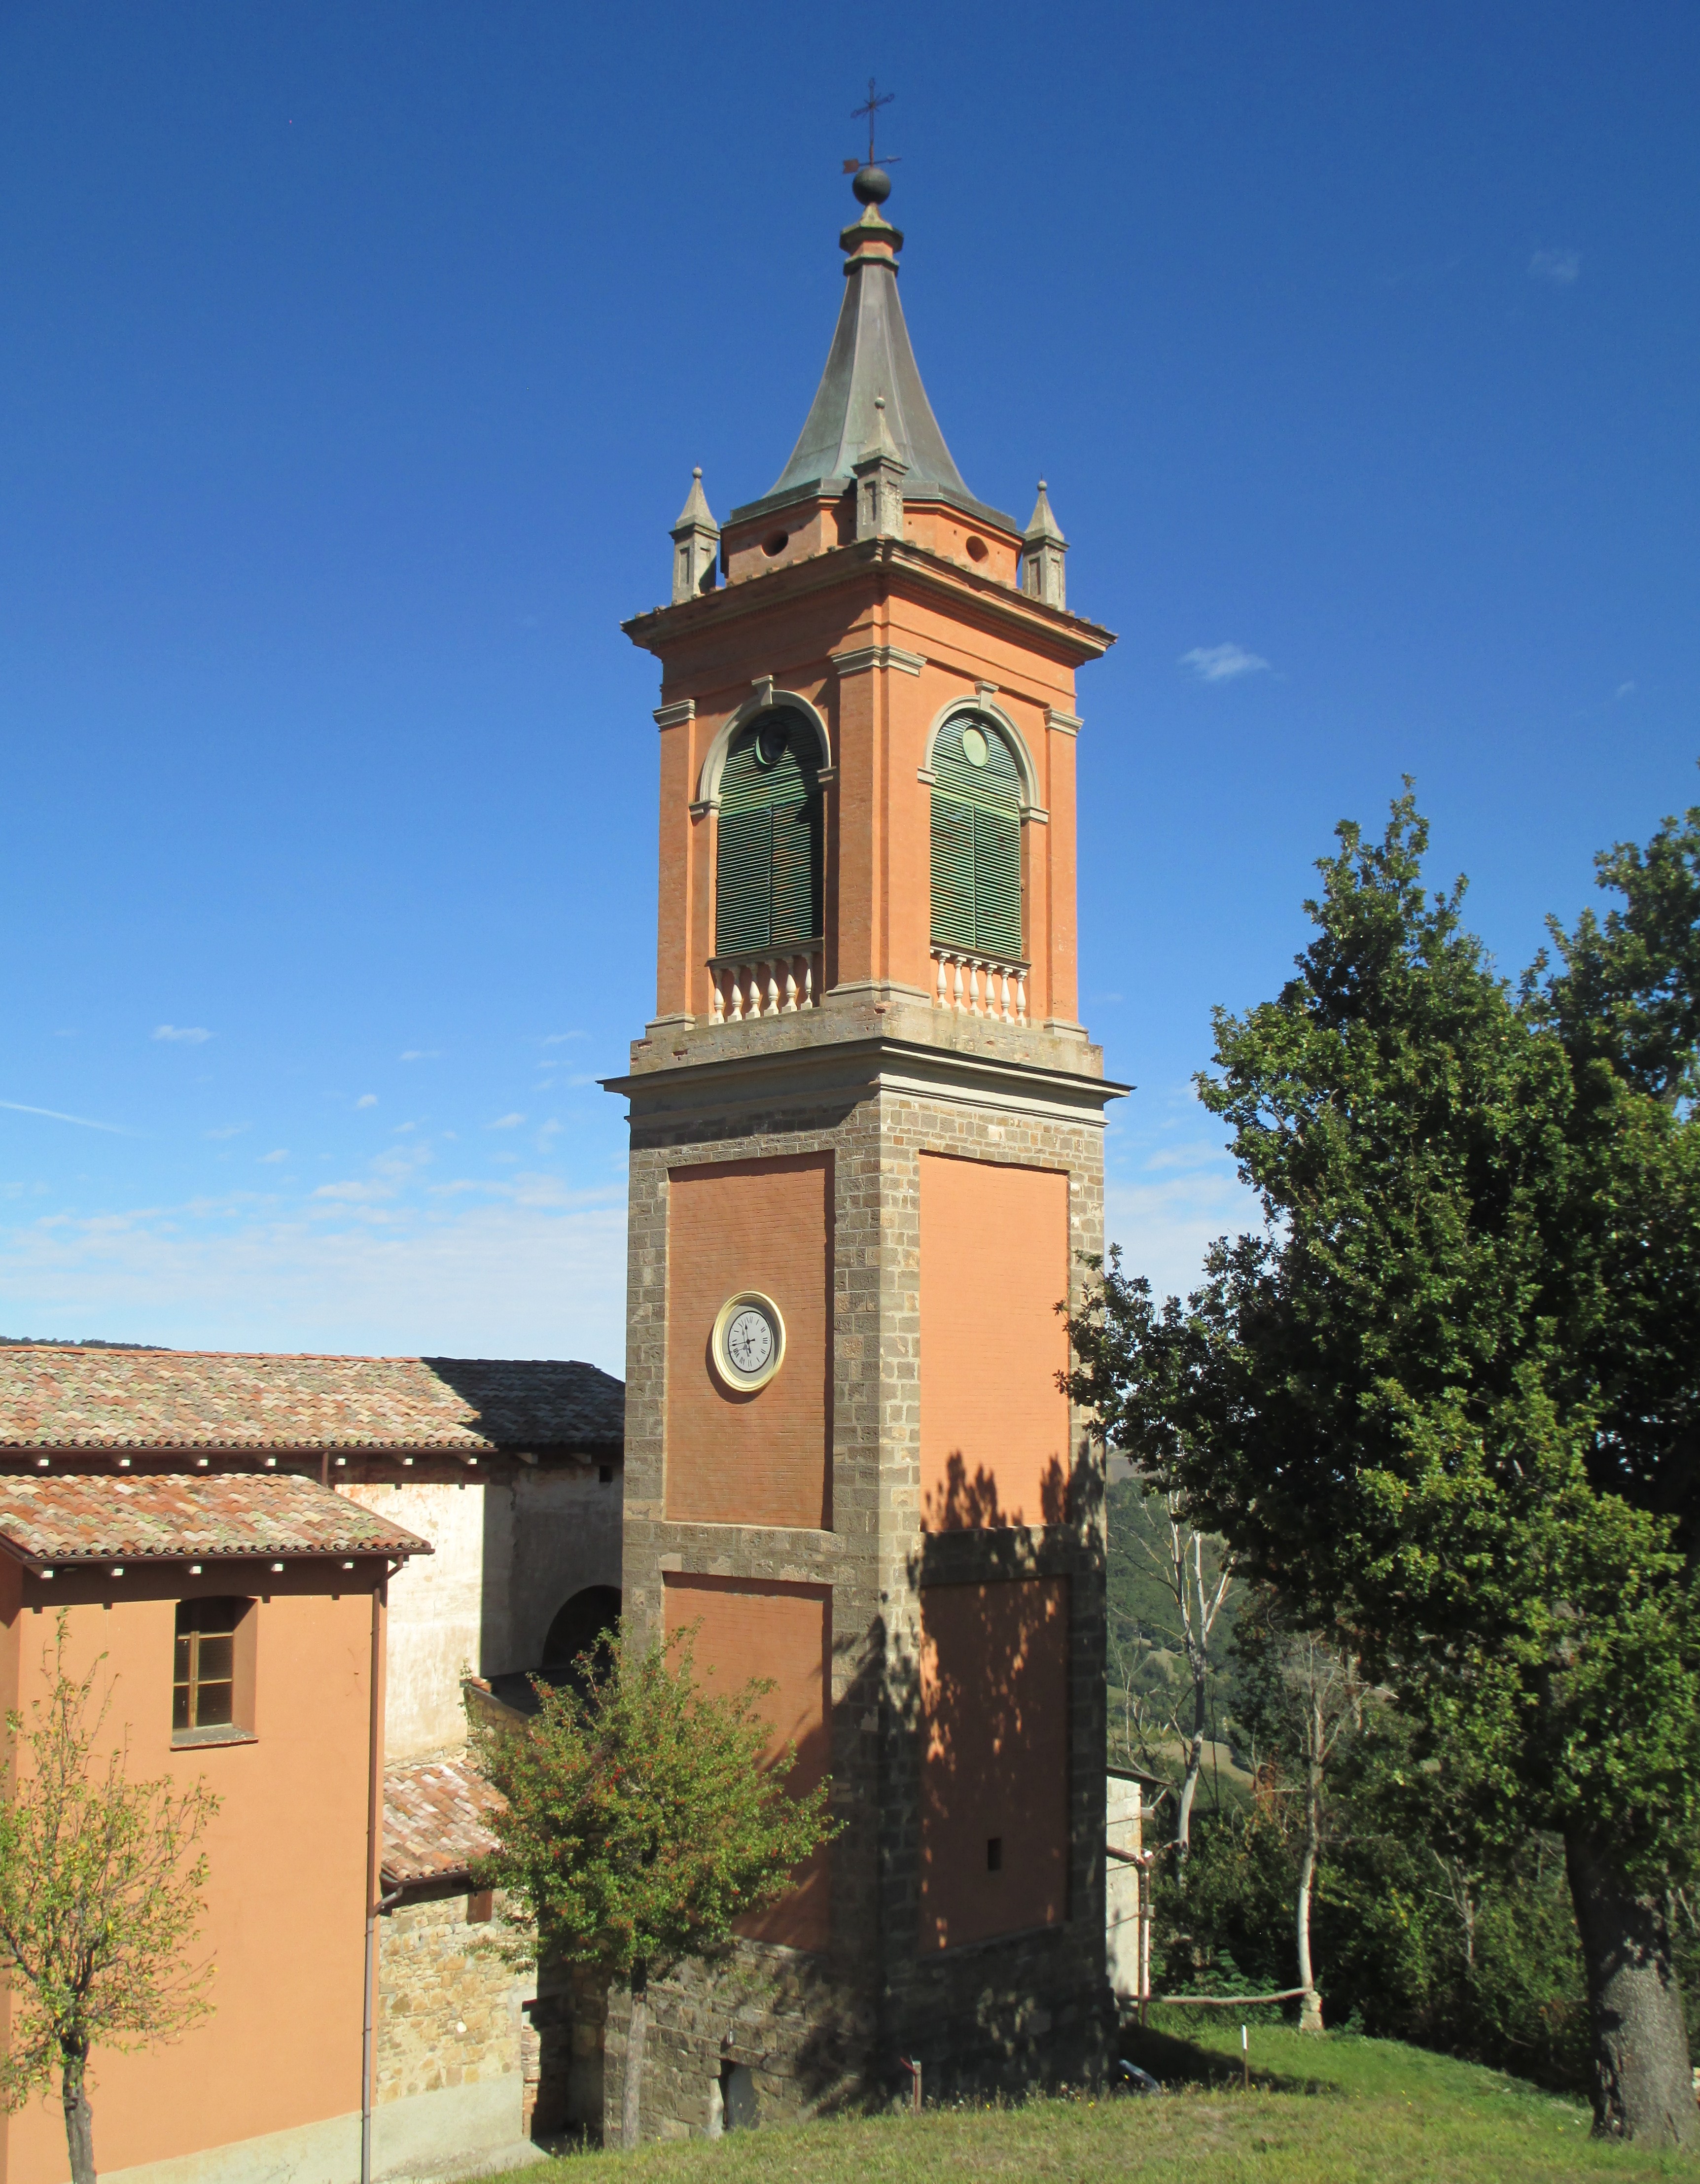 Campanile della Chiesa di Santa Croce (campanile) - Valsamoggia (BO) 